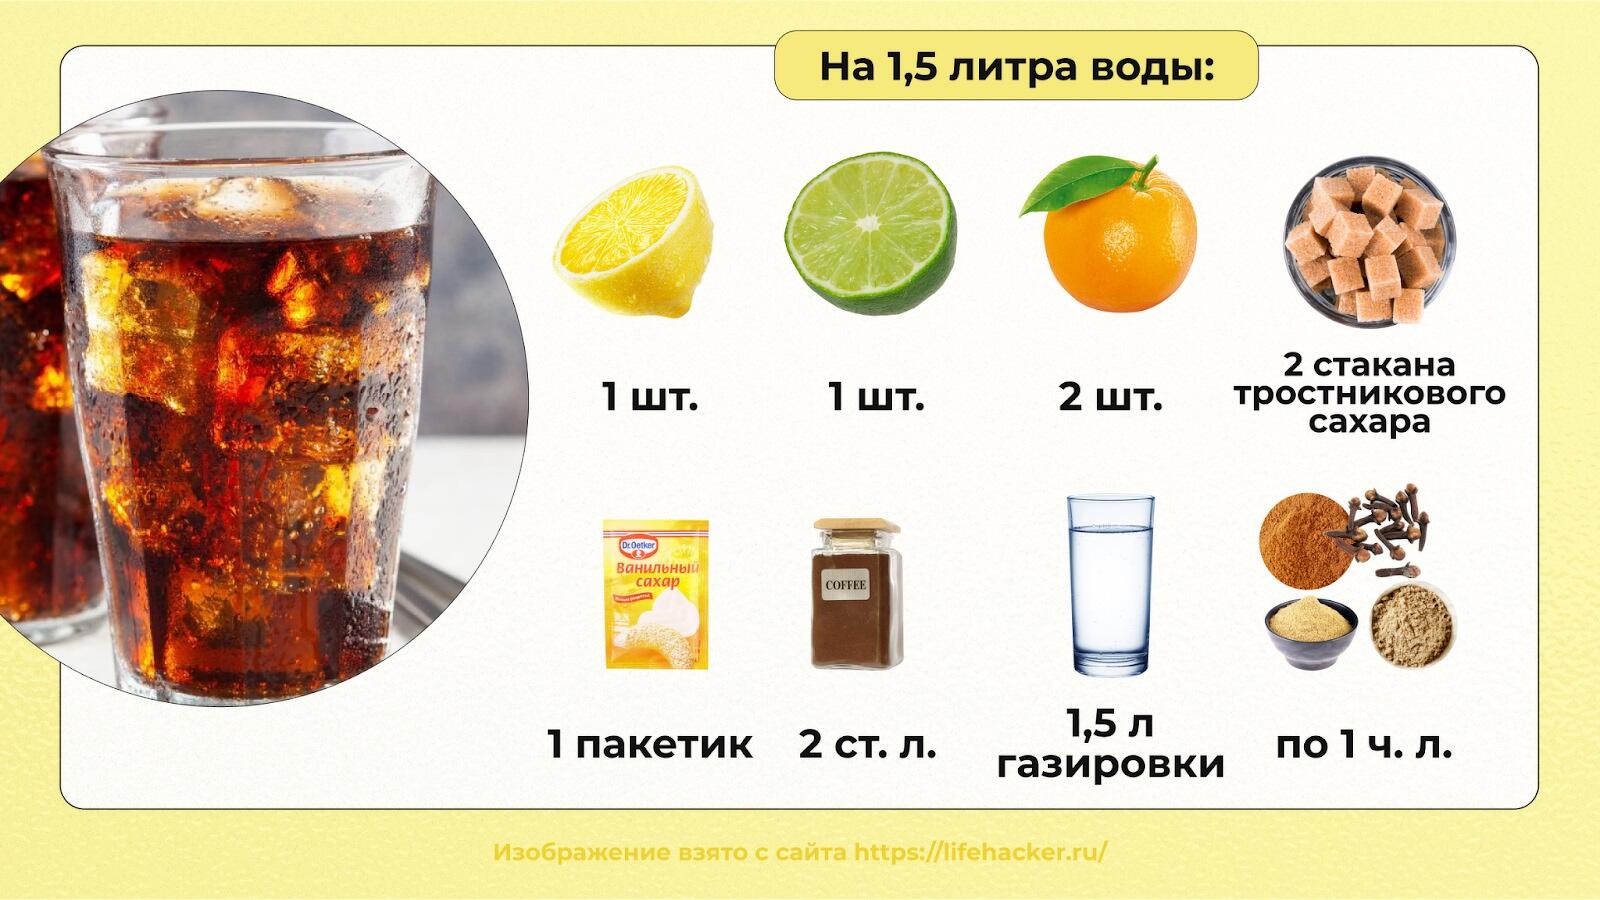 Вариант 1: Классический рецепт лимонада из апельсинов в домашних условиях